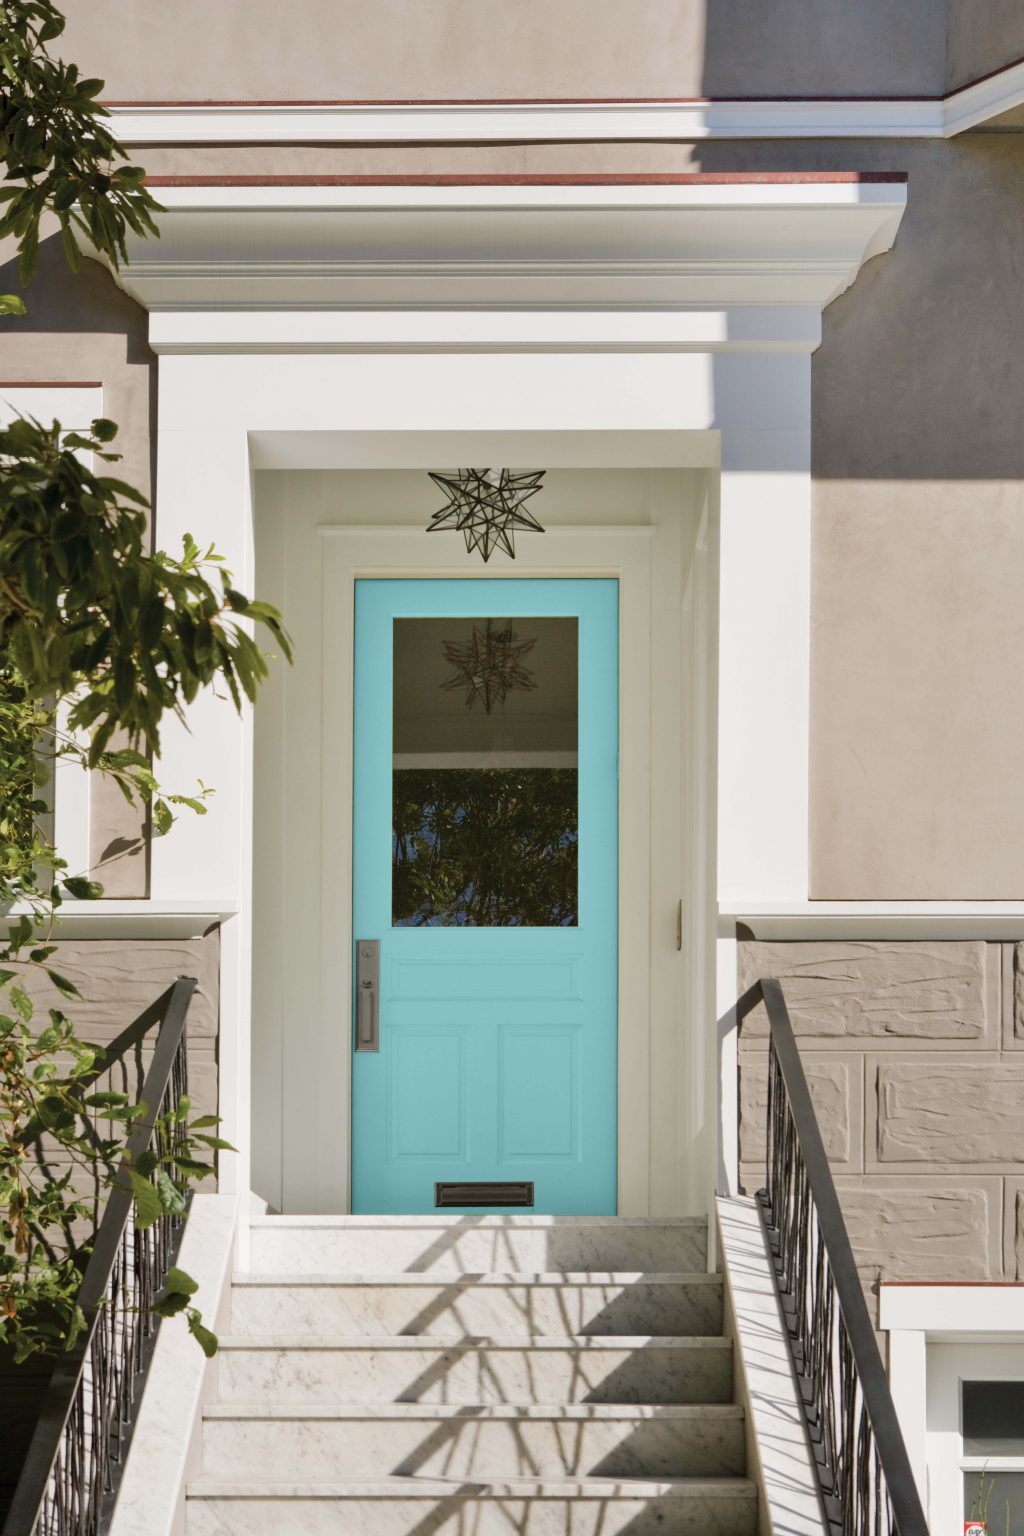 L'extérieur d'une maison avec la porte d'entrée peinte dans la couleur Pur turquoise